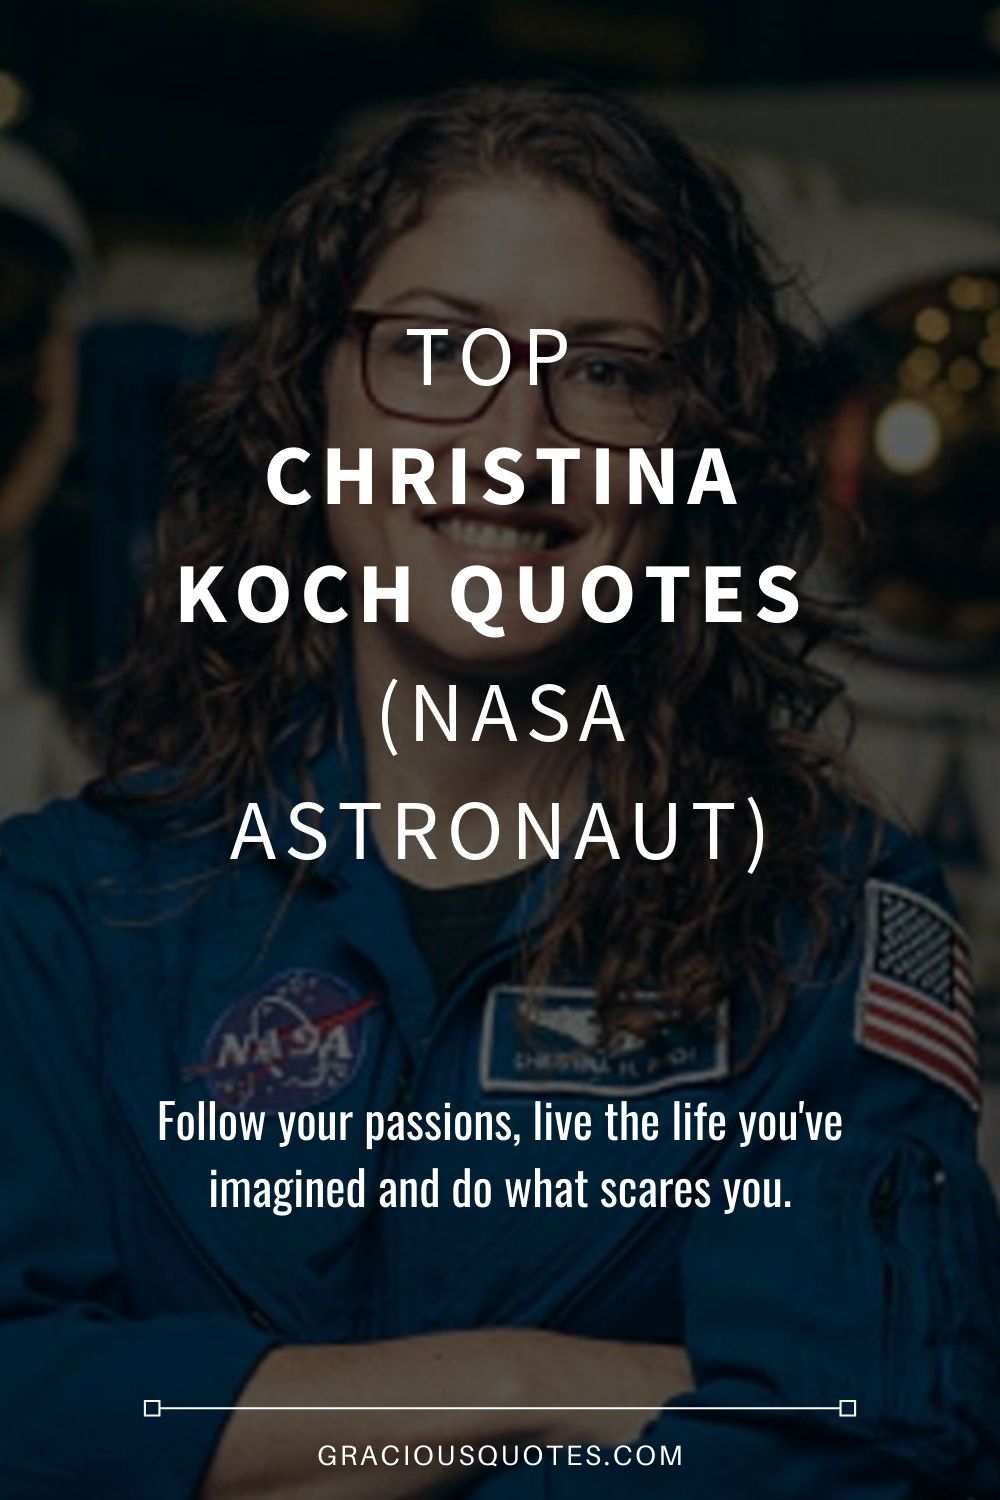 Top Christina Koch Quotes (NASA ASTRONAUT) - Gracious Quotes